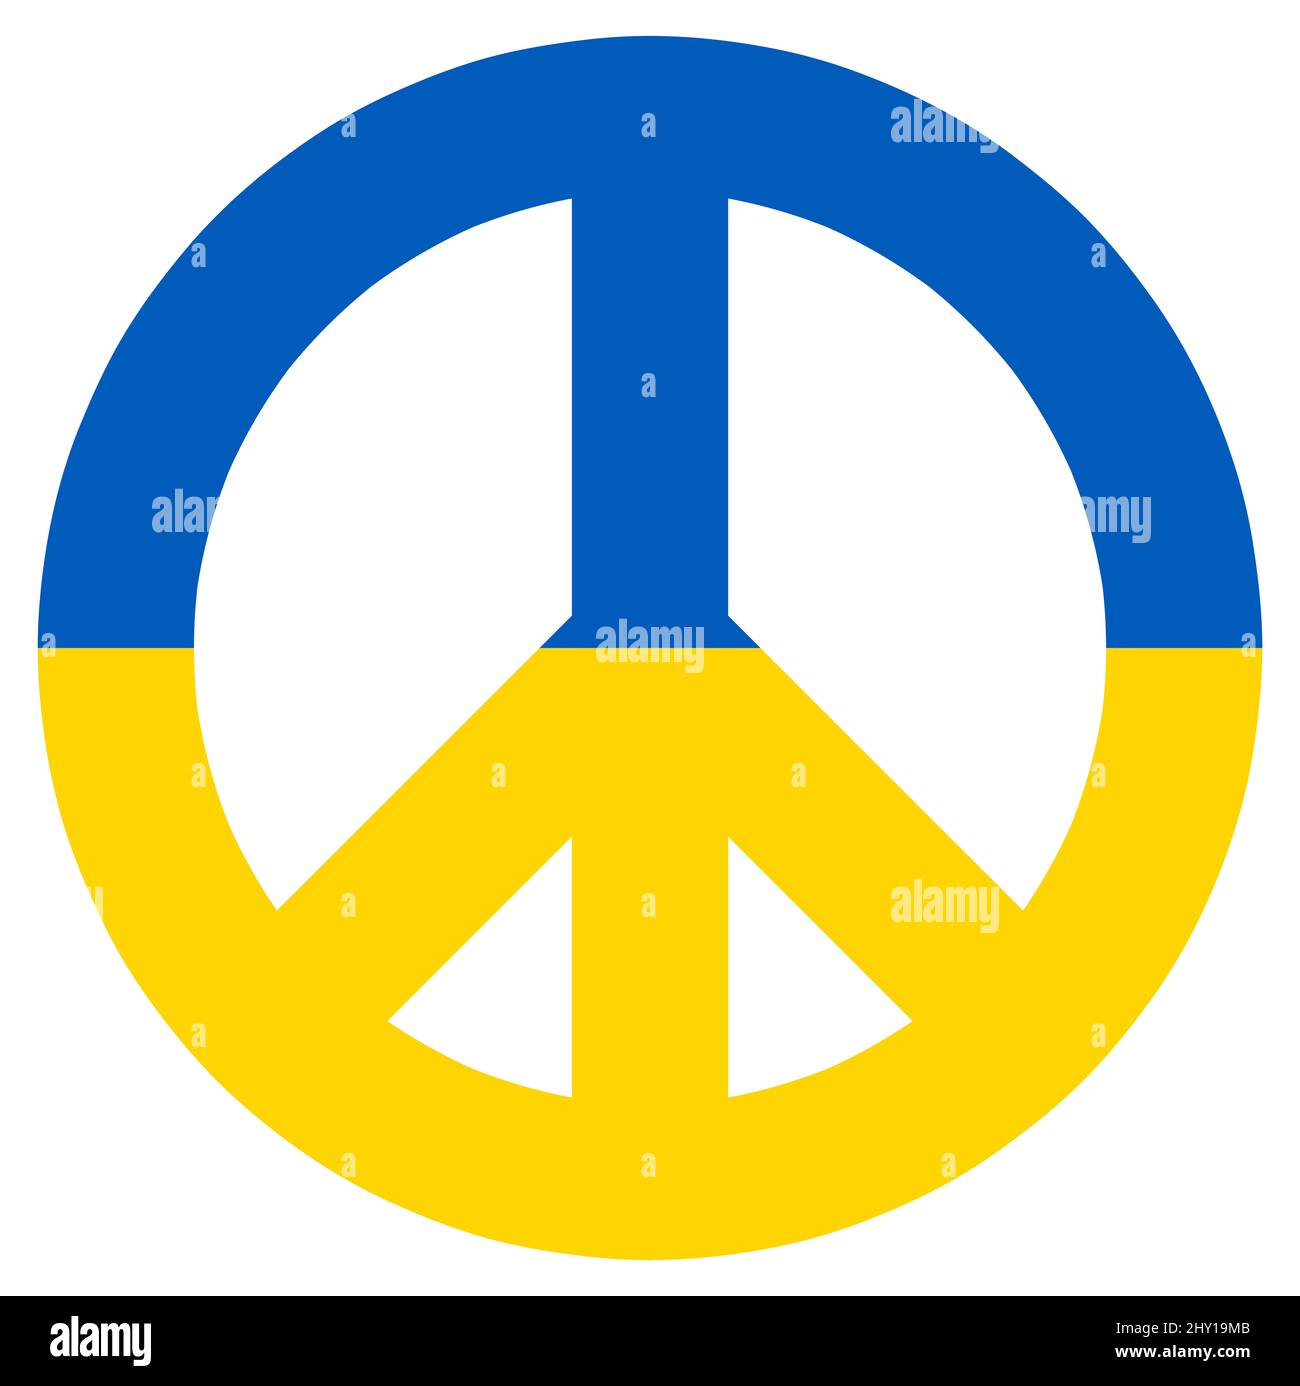 illustrazione vettoriale eps con segno di pace colorato con colori paese di ucraina per il conflitto con la russia 2022 Foto Stock